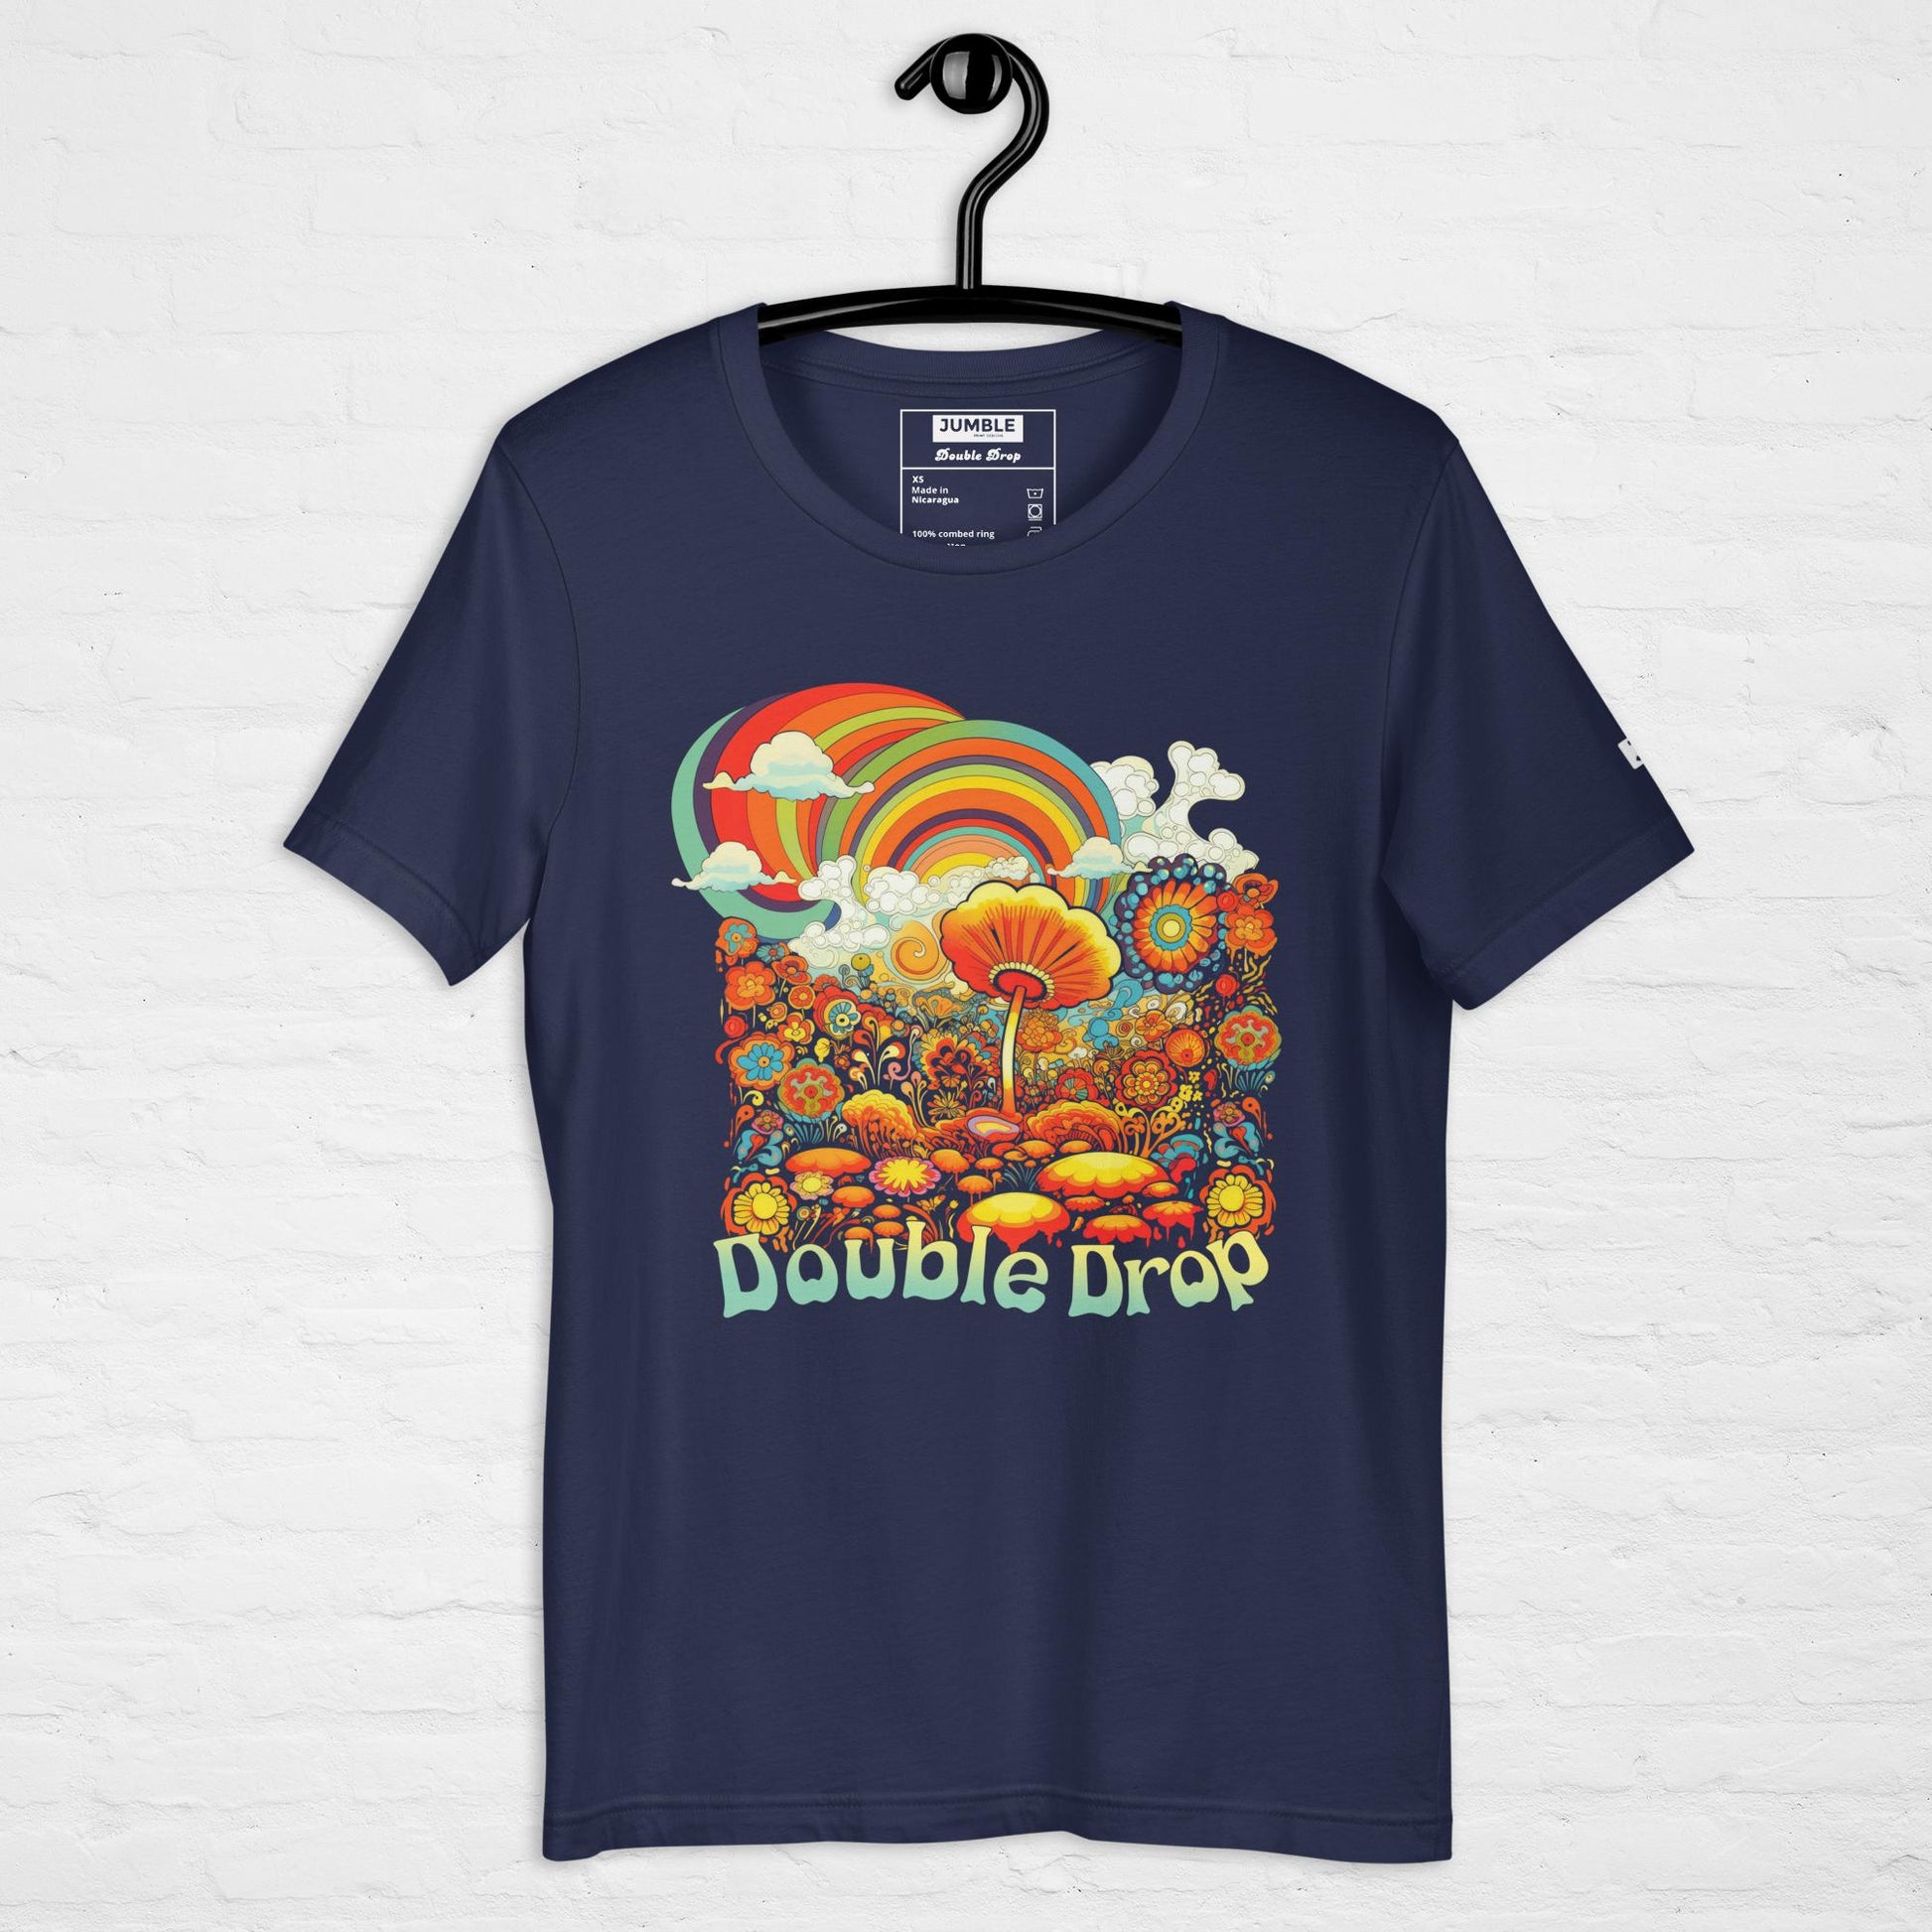 Double Drop Unisex t-shirt- in navy, on hanger